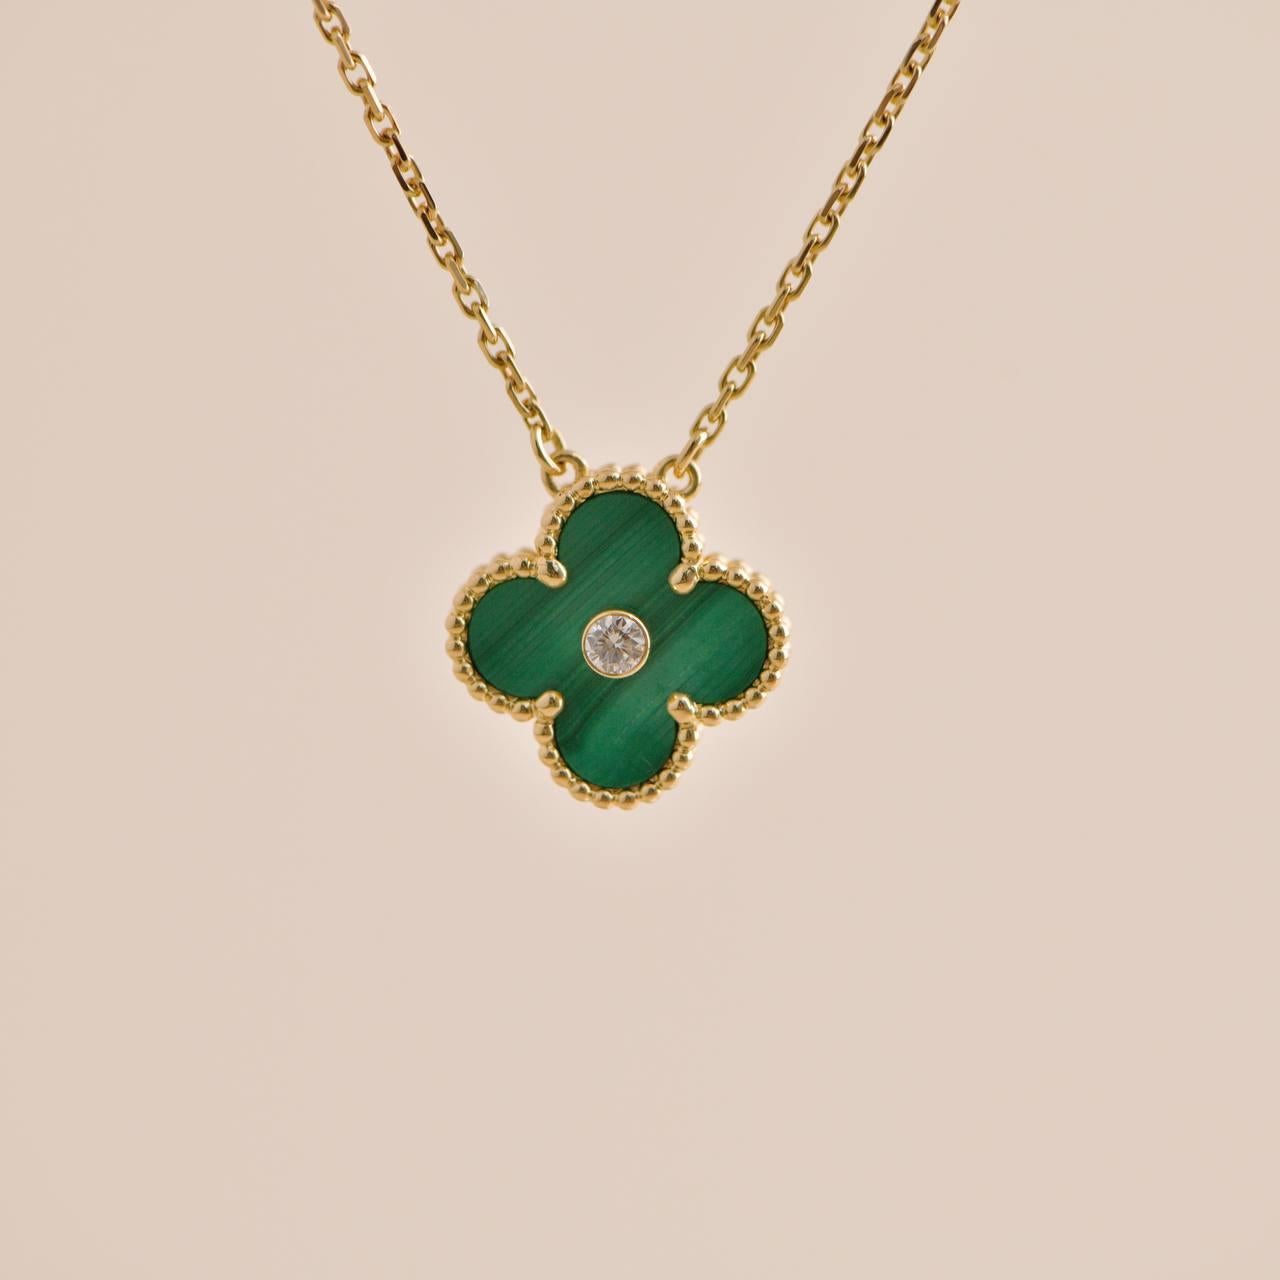 Taille brillant Van Cleef & Arpels, collier pendentif Vintage Alhambra 2013 en diamants et malachite